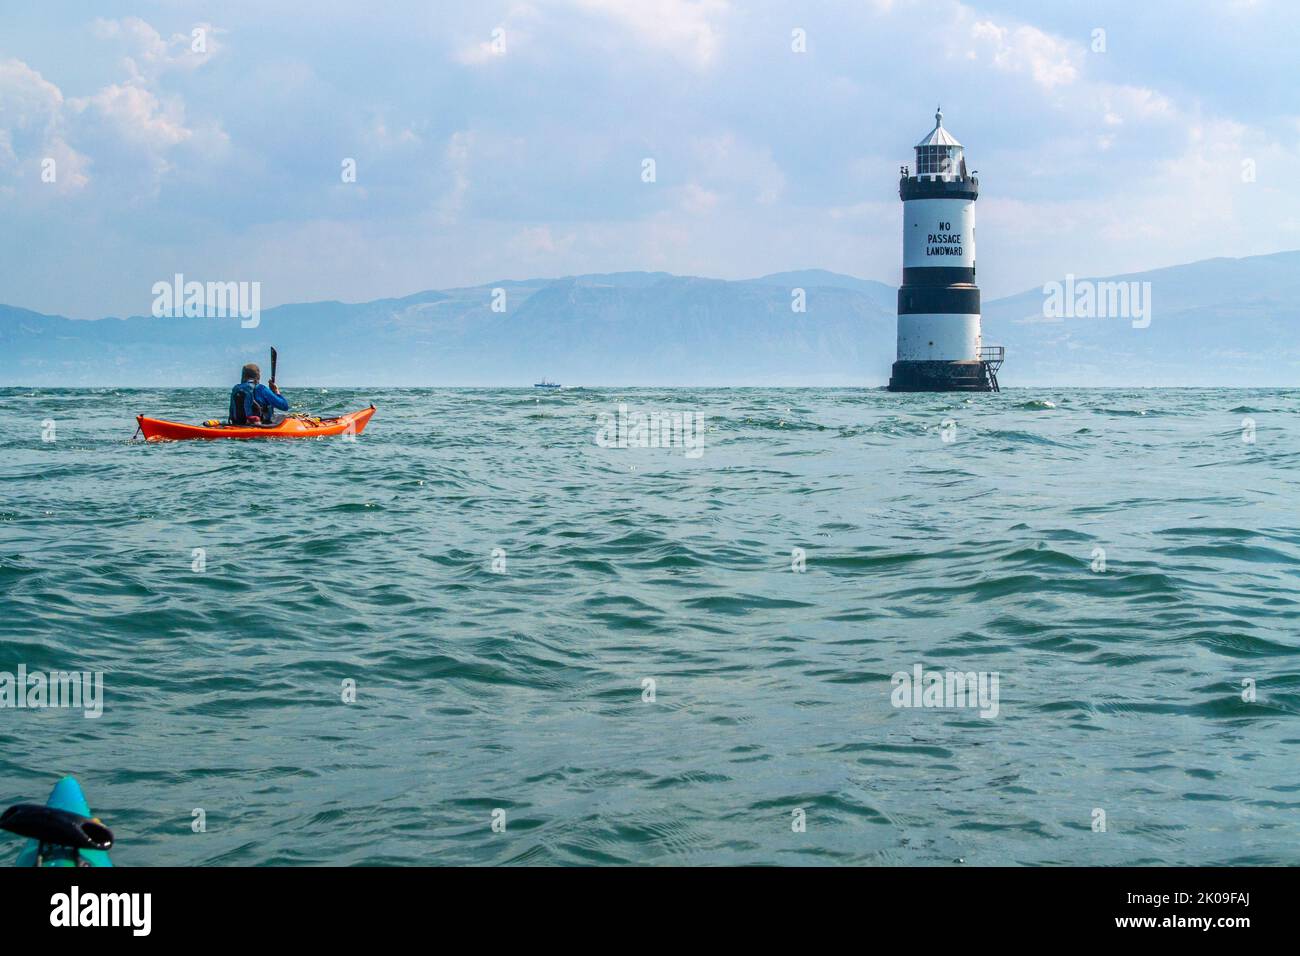 Kayak de mer près de Trwyn du Lighthouse, également connu sous le nom de Penmon Lighthouse, au large de Puffin Island, sur la côte d'Anglesey, au pays de Galles au Royaume-Uni Banque D'Images